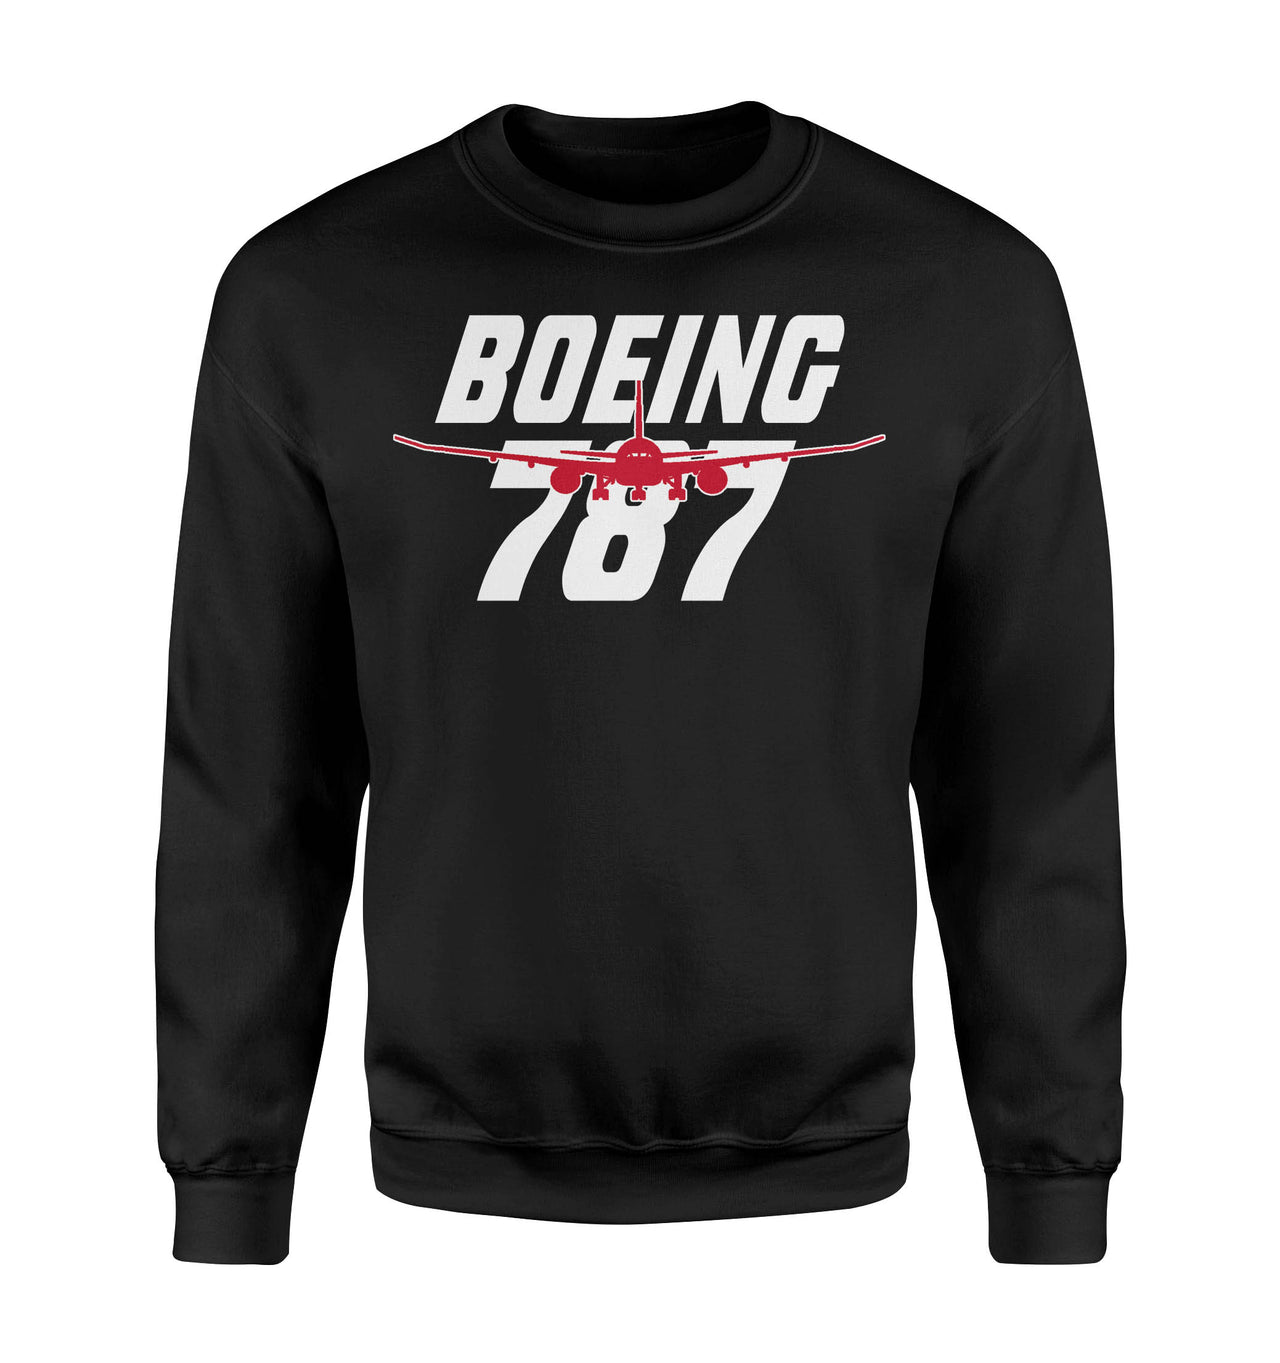 Amazing Boeing 787 Designed Sweatshirts